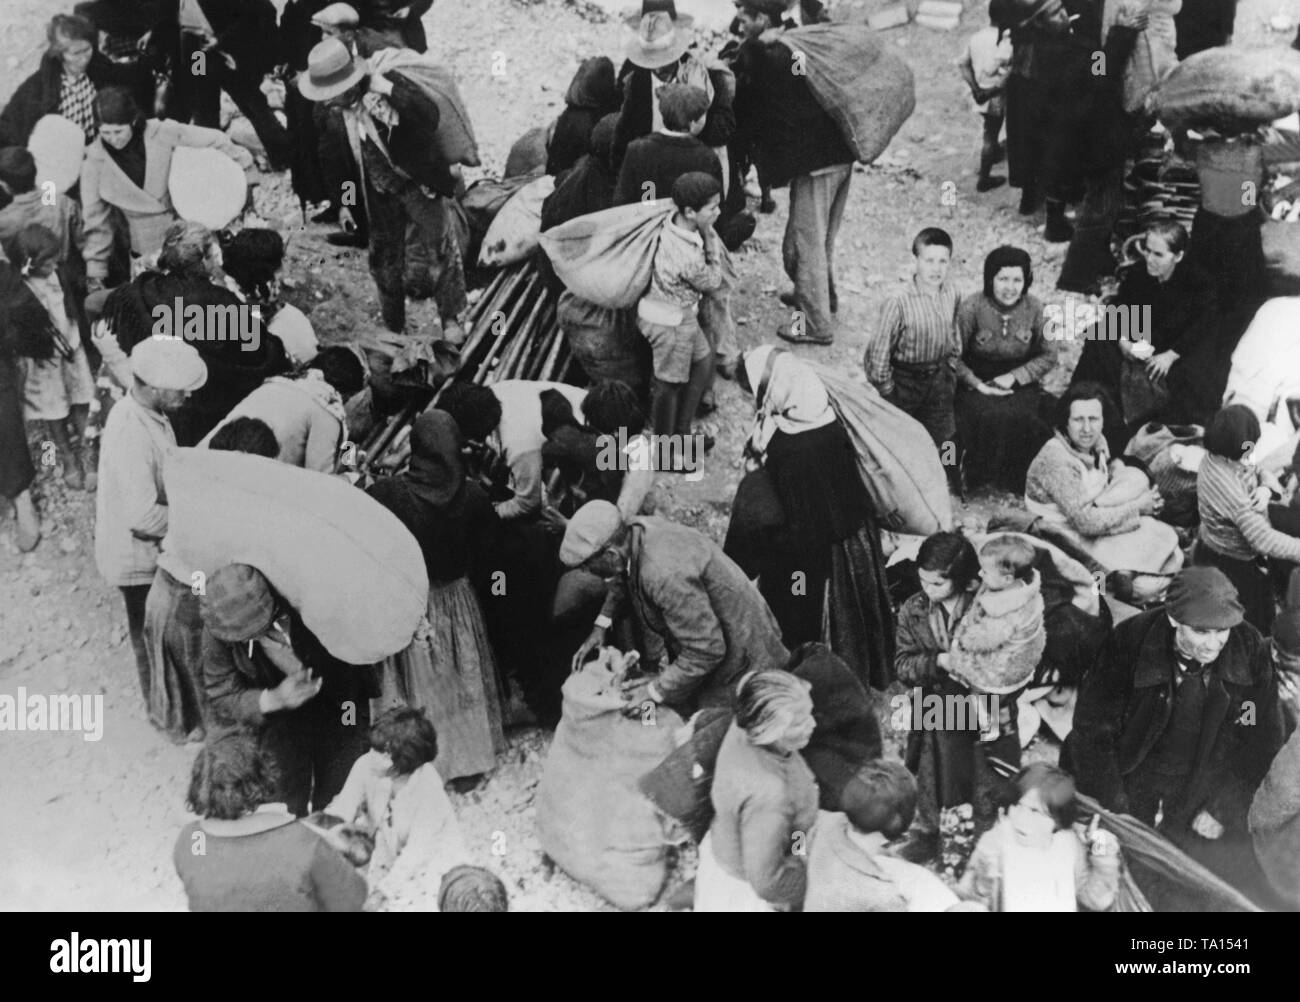 Foto der Landwirte auf der Flucht vor dem Krieg und Repression in der Provinz Valencia 1937. Menschen tragen ihre Besitztümer in Säcken auf dem Rücken. Stockfoto